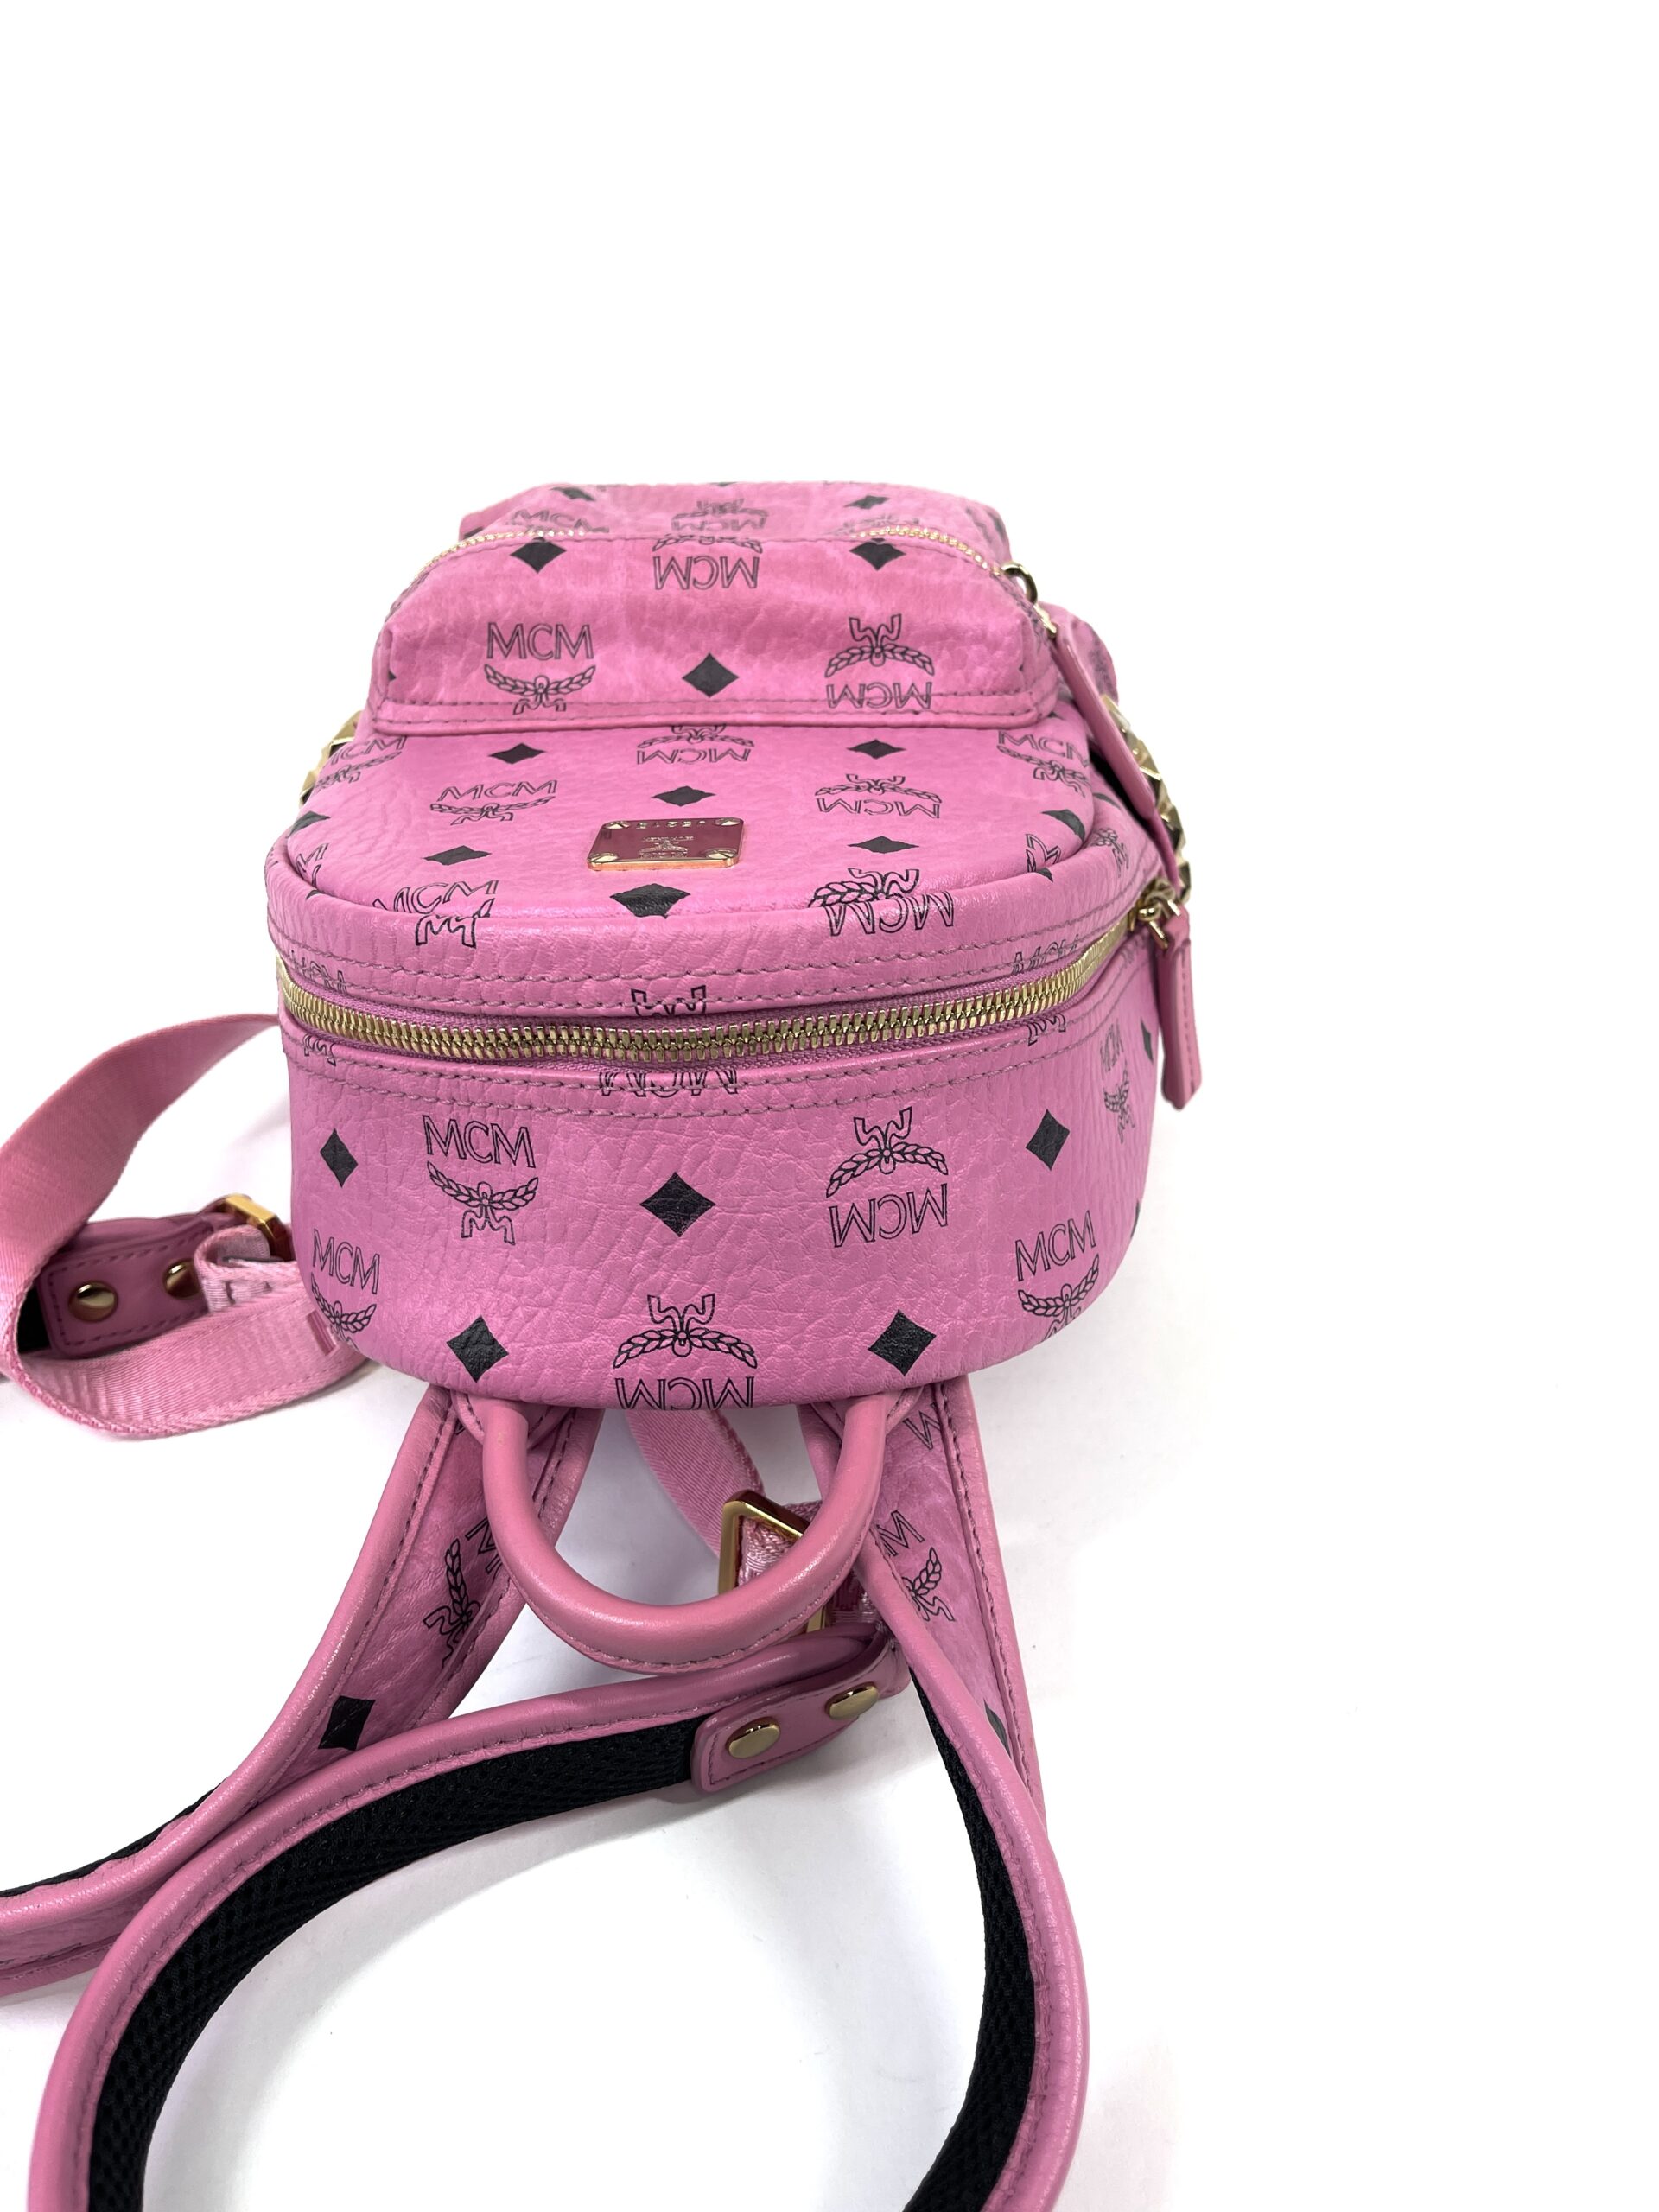 MCM Visetos Side Stud Mini Stark Backpack Pink Black 1293375